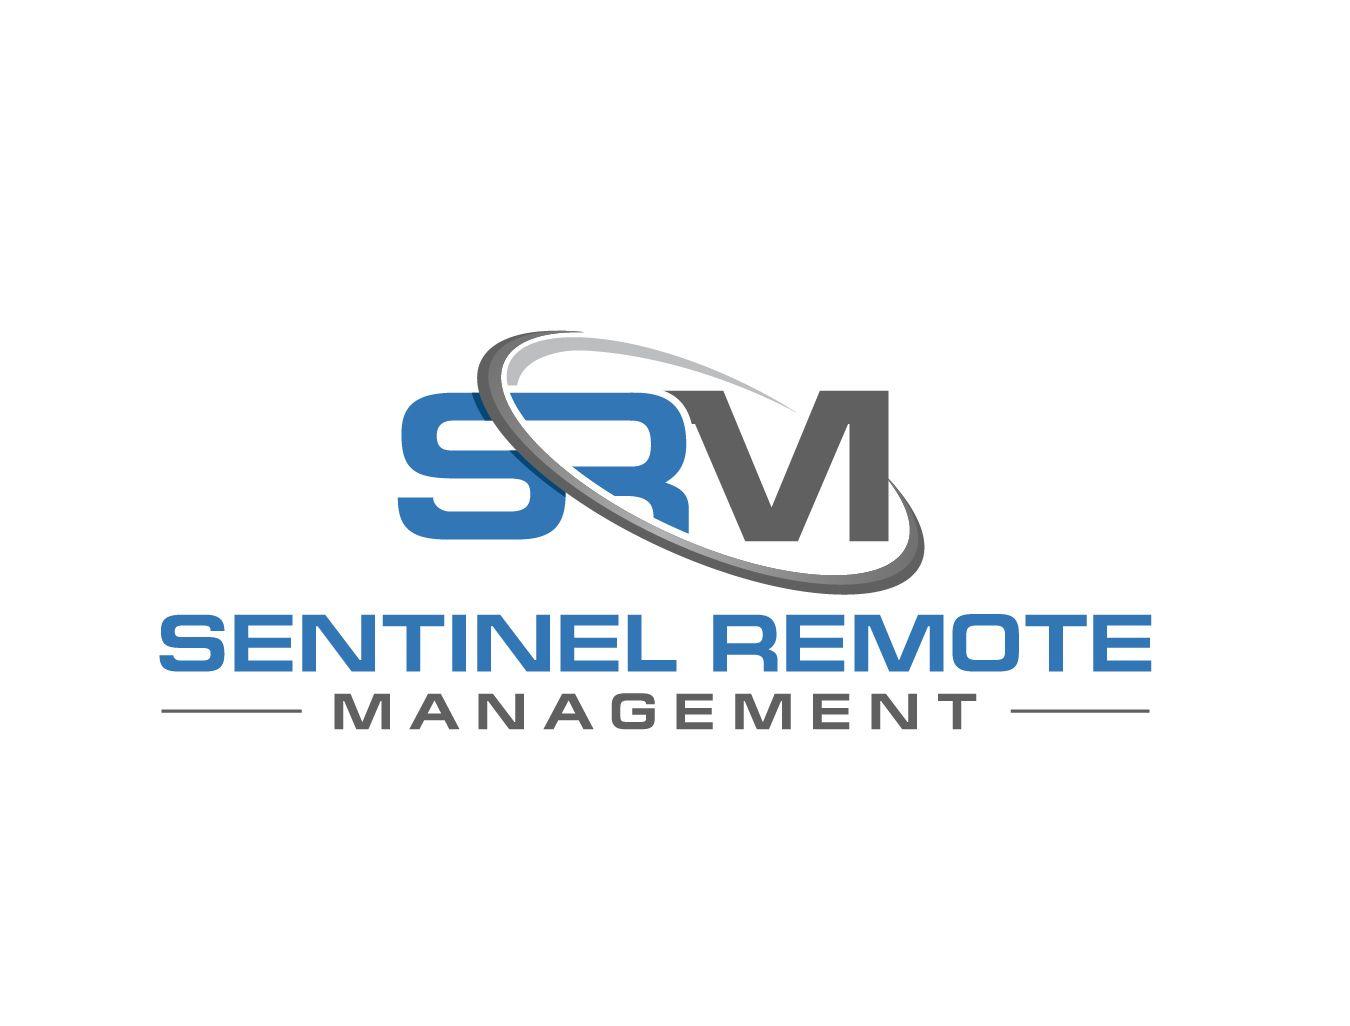 SRM Logo - Bold, Professional, Information Technology Logo Design for 